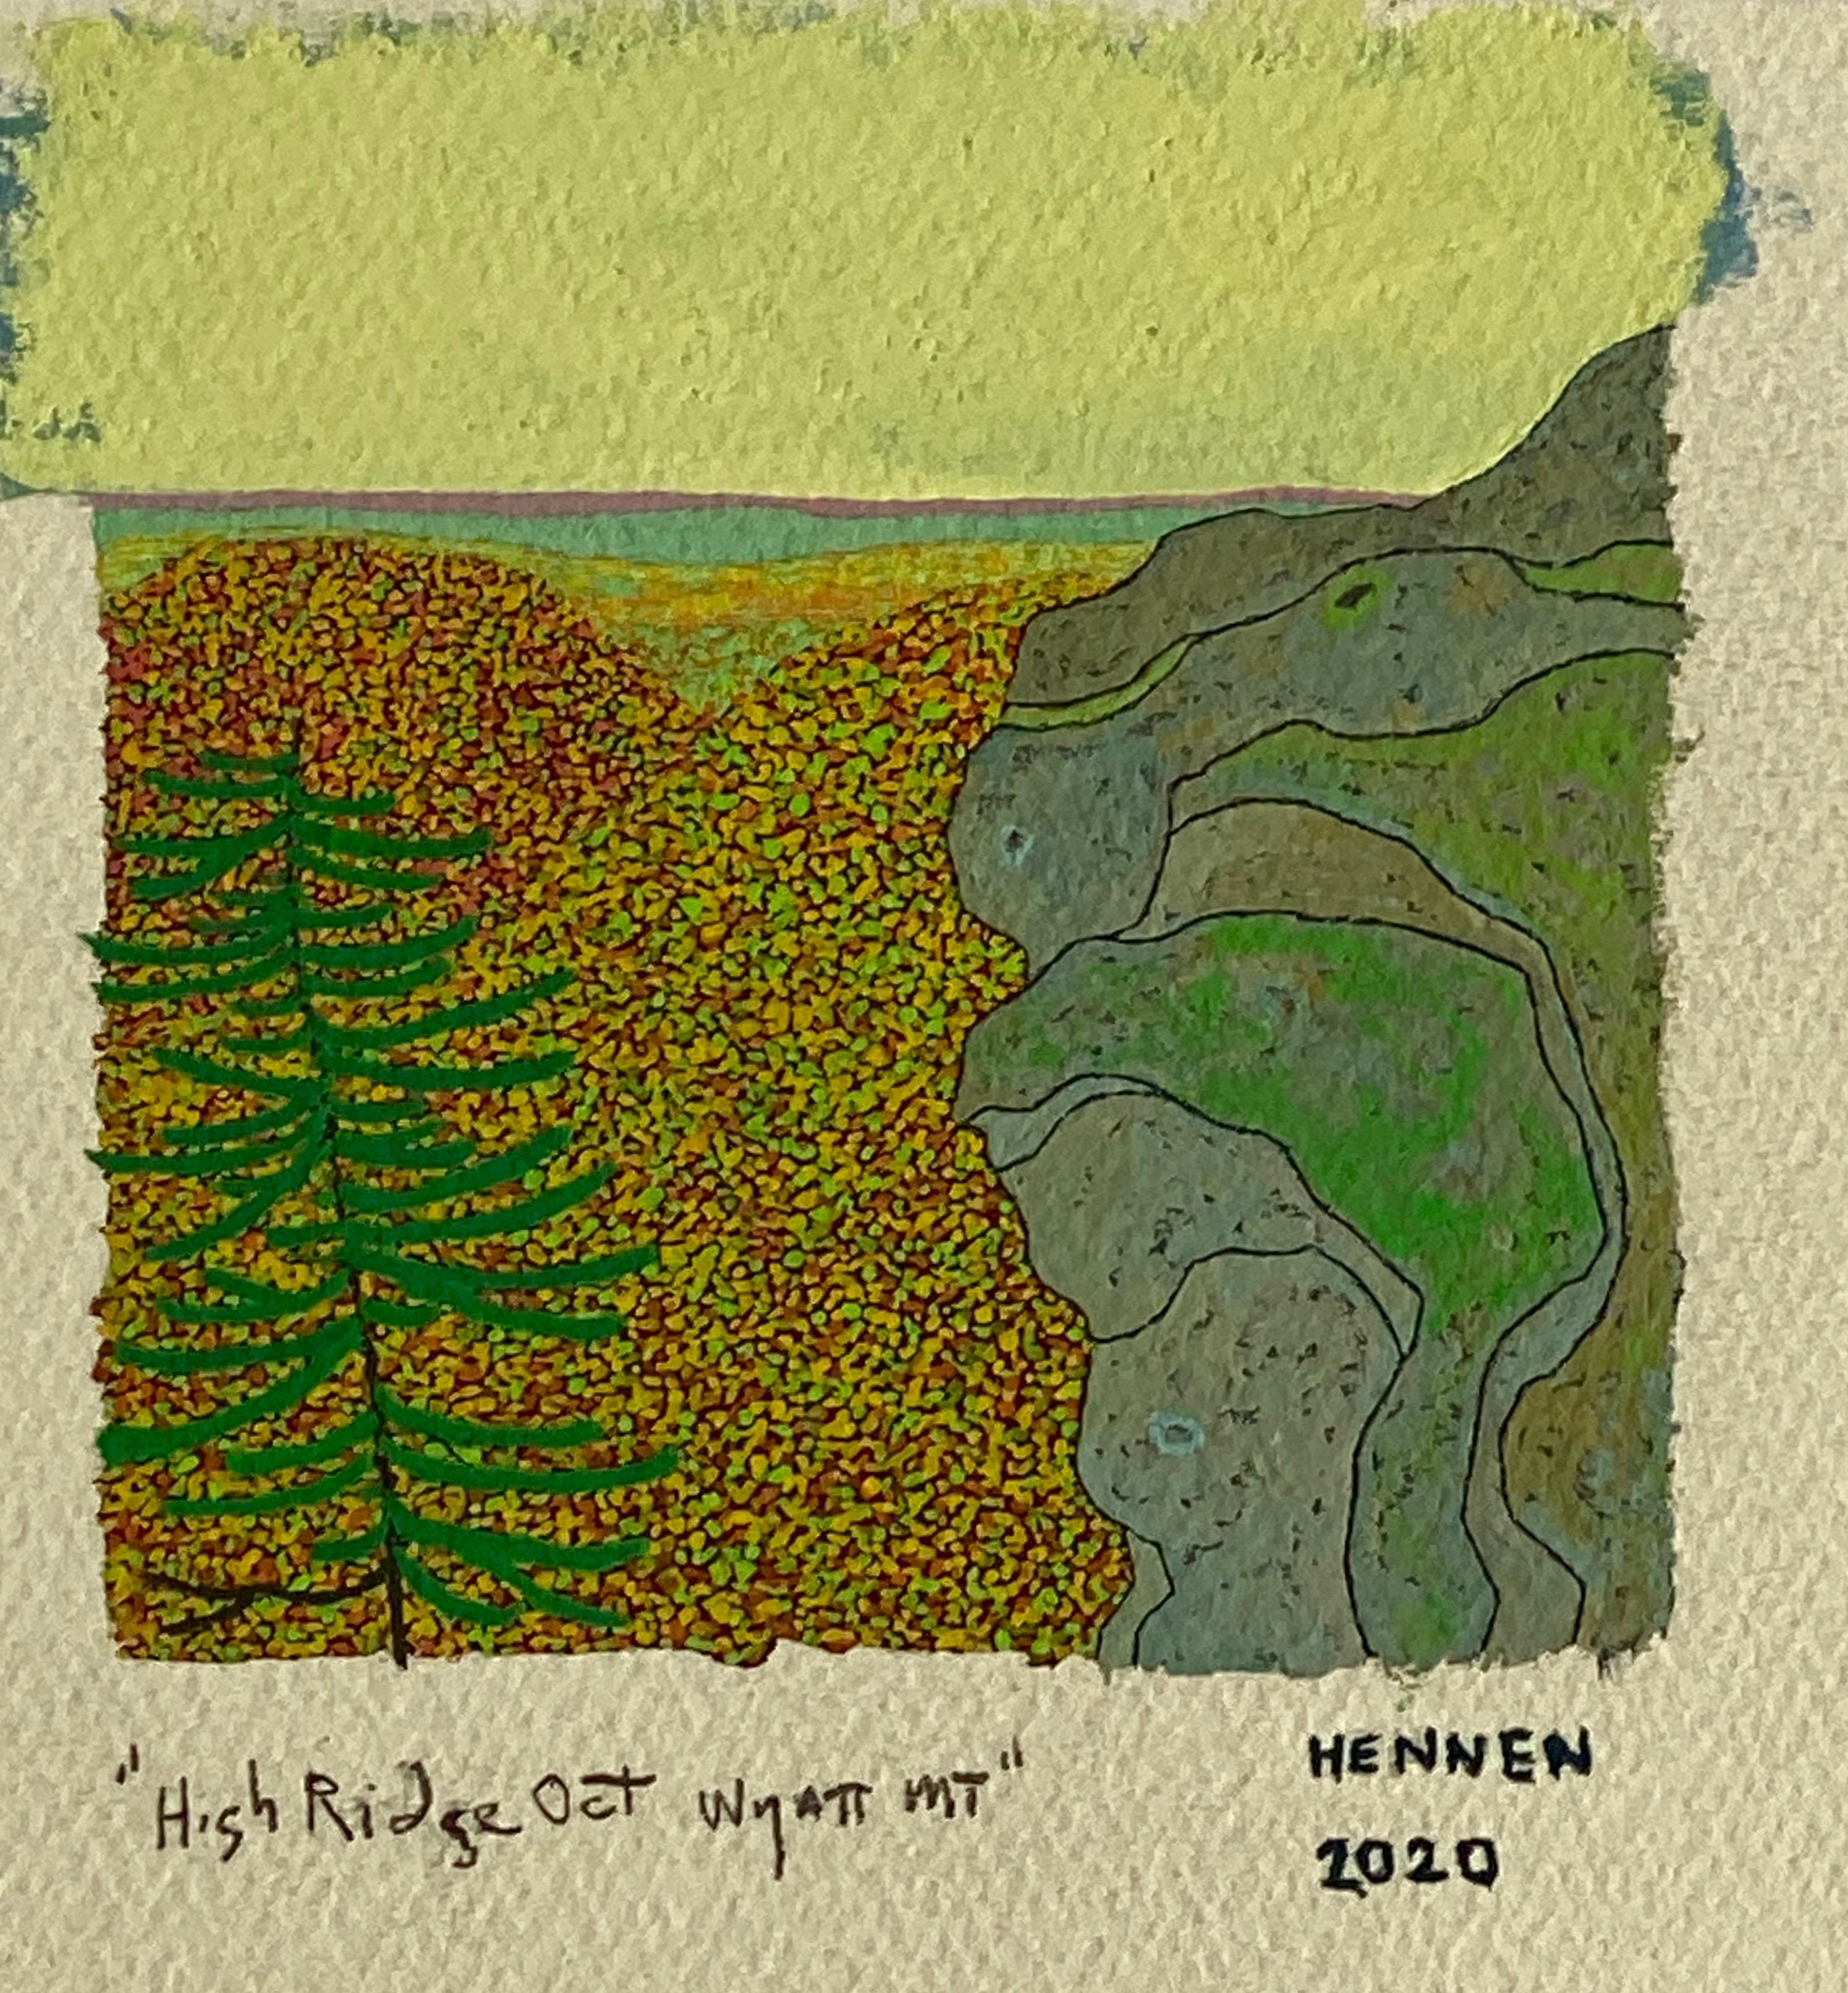 High Ridge, Oktober, Wyatt Mt, Gray Mountain, Grün, Gelb, Herbstlaub (Zeitgenössisch), Painting, von Gregory Hennen